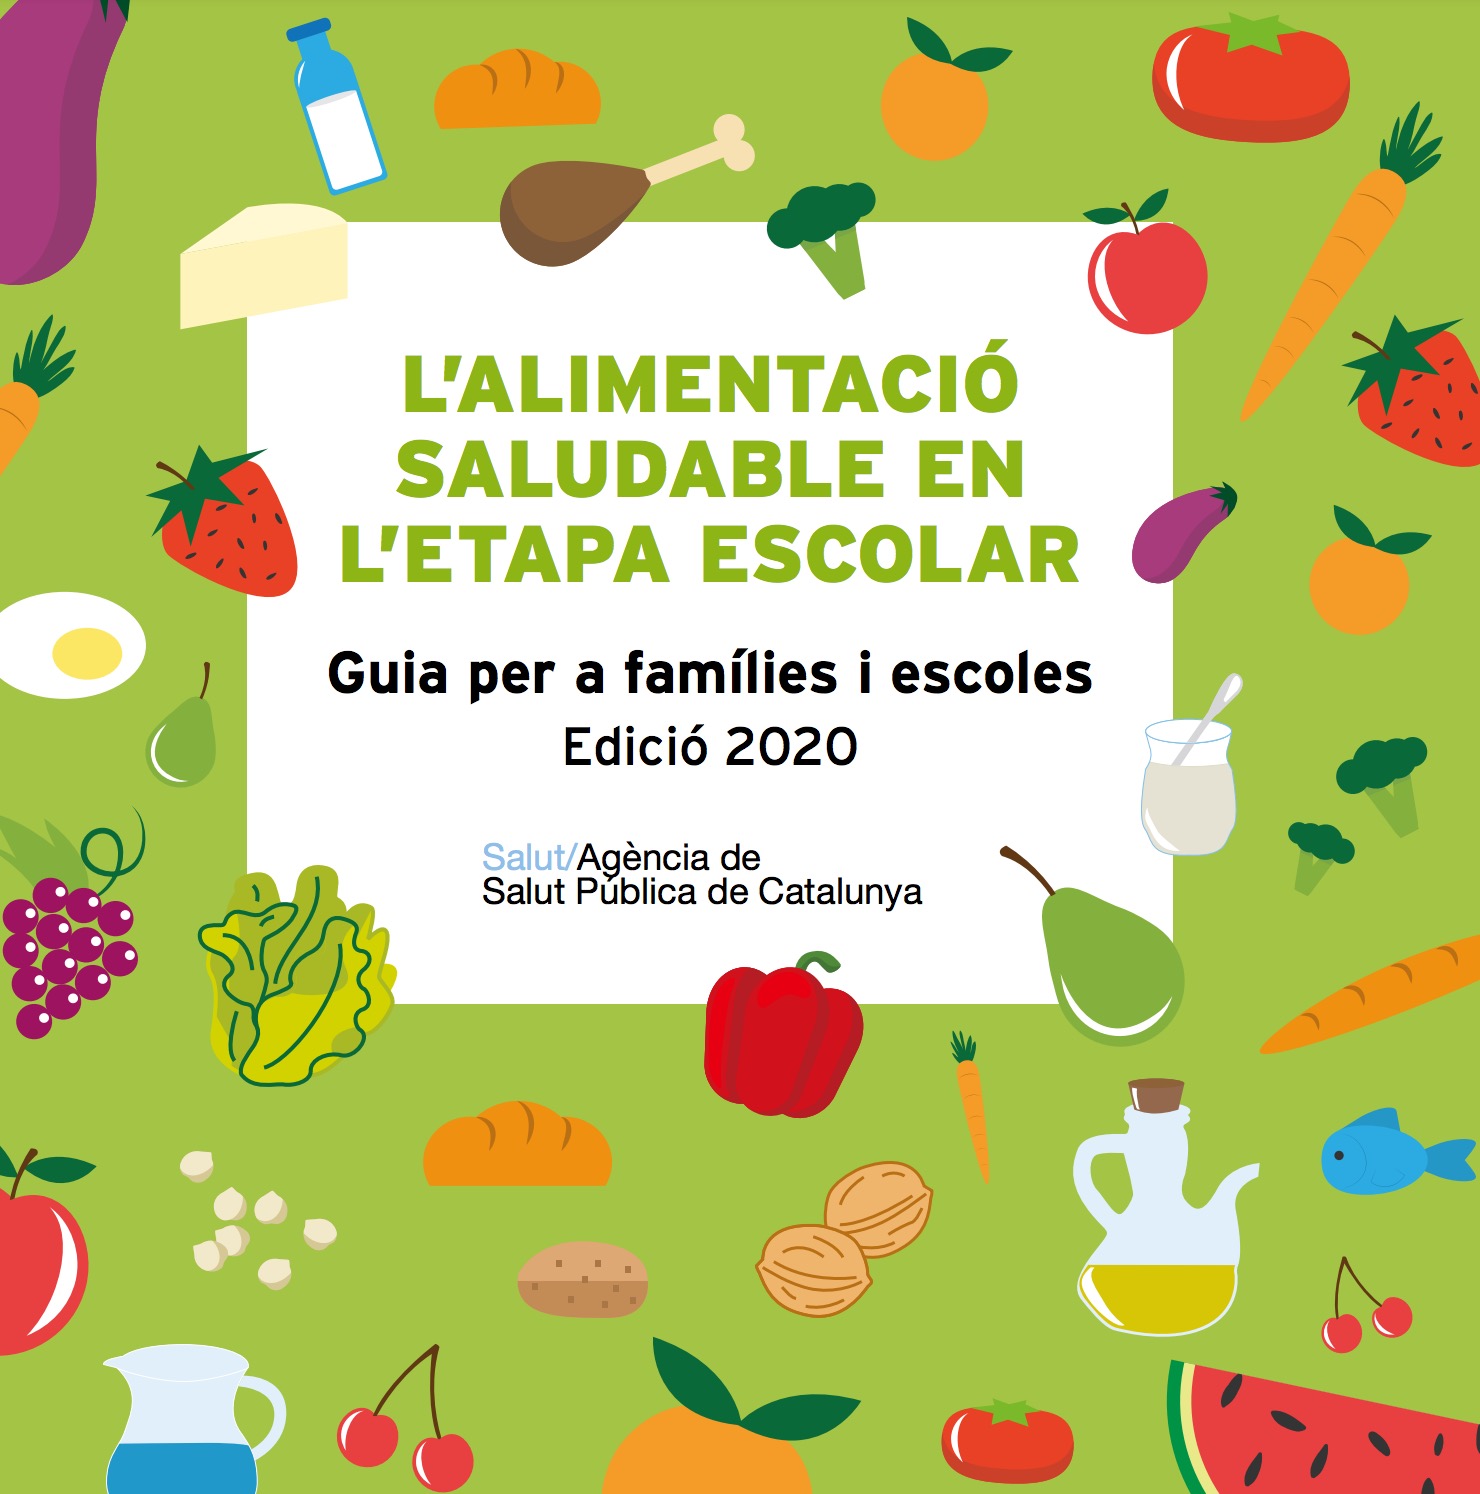 L’alimentació saludable en l’etapa escolar. Guia per a famílies i escoles, edició 2020